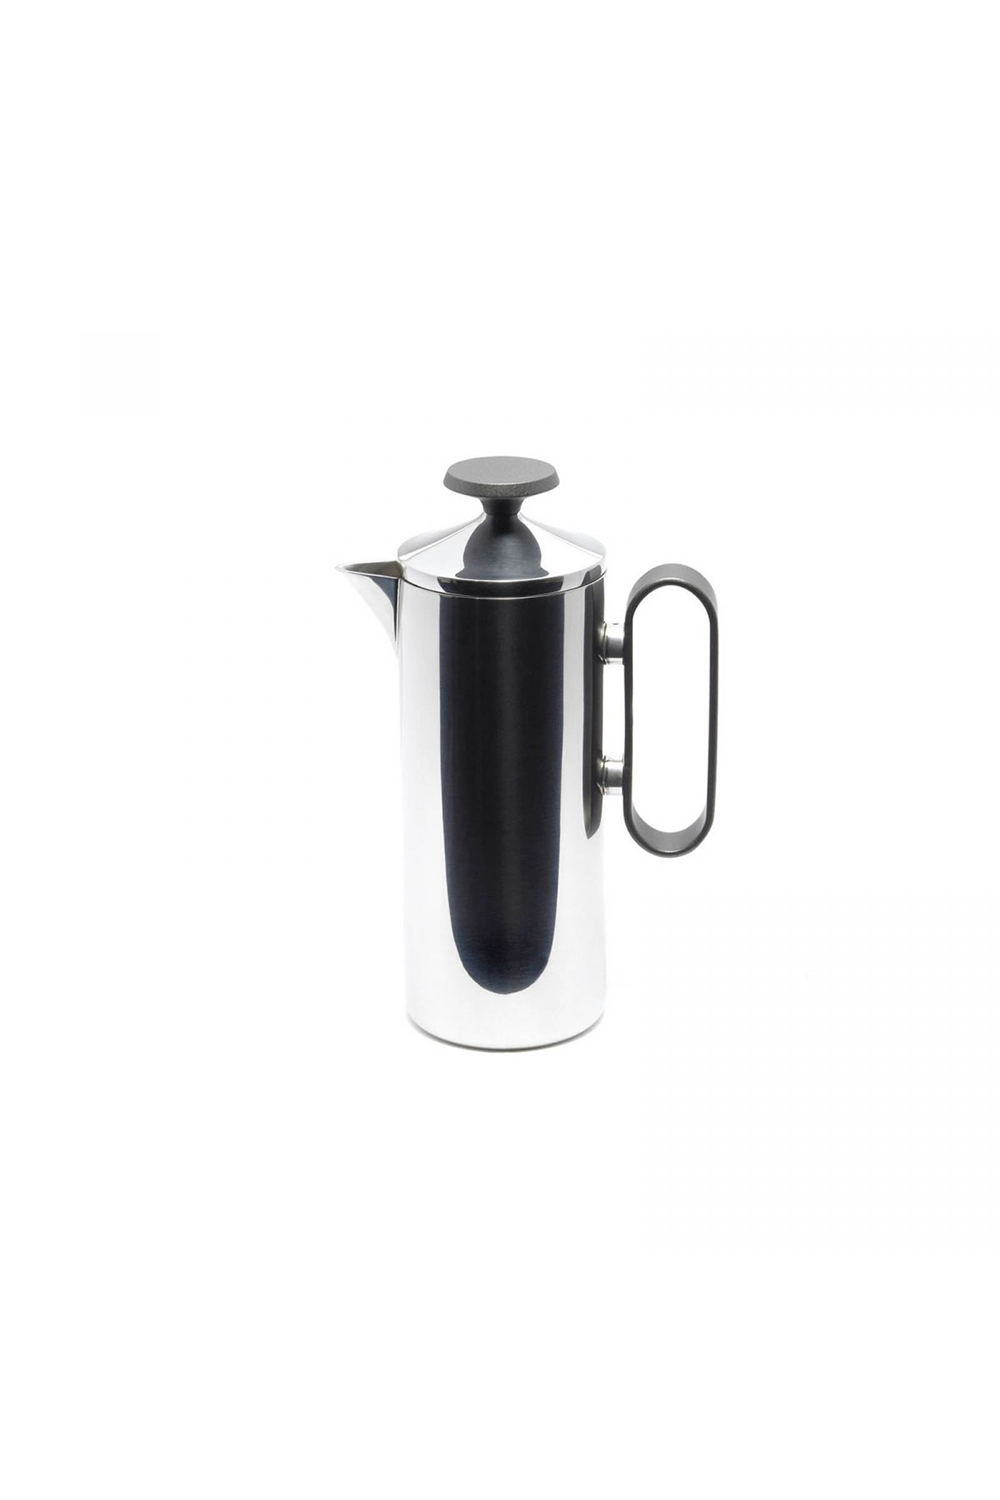 Café tiere 3 cups grey metallic handle